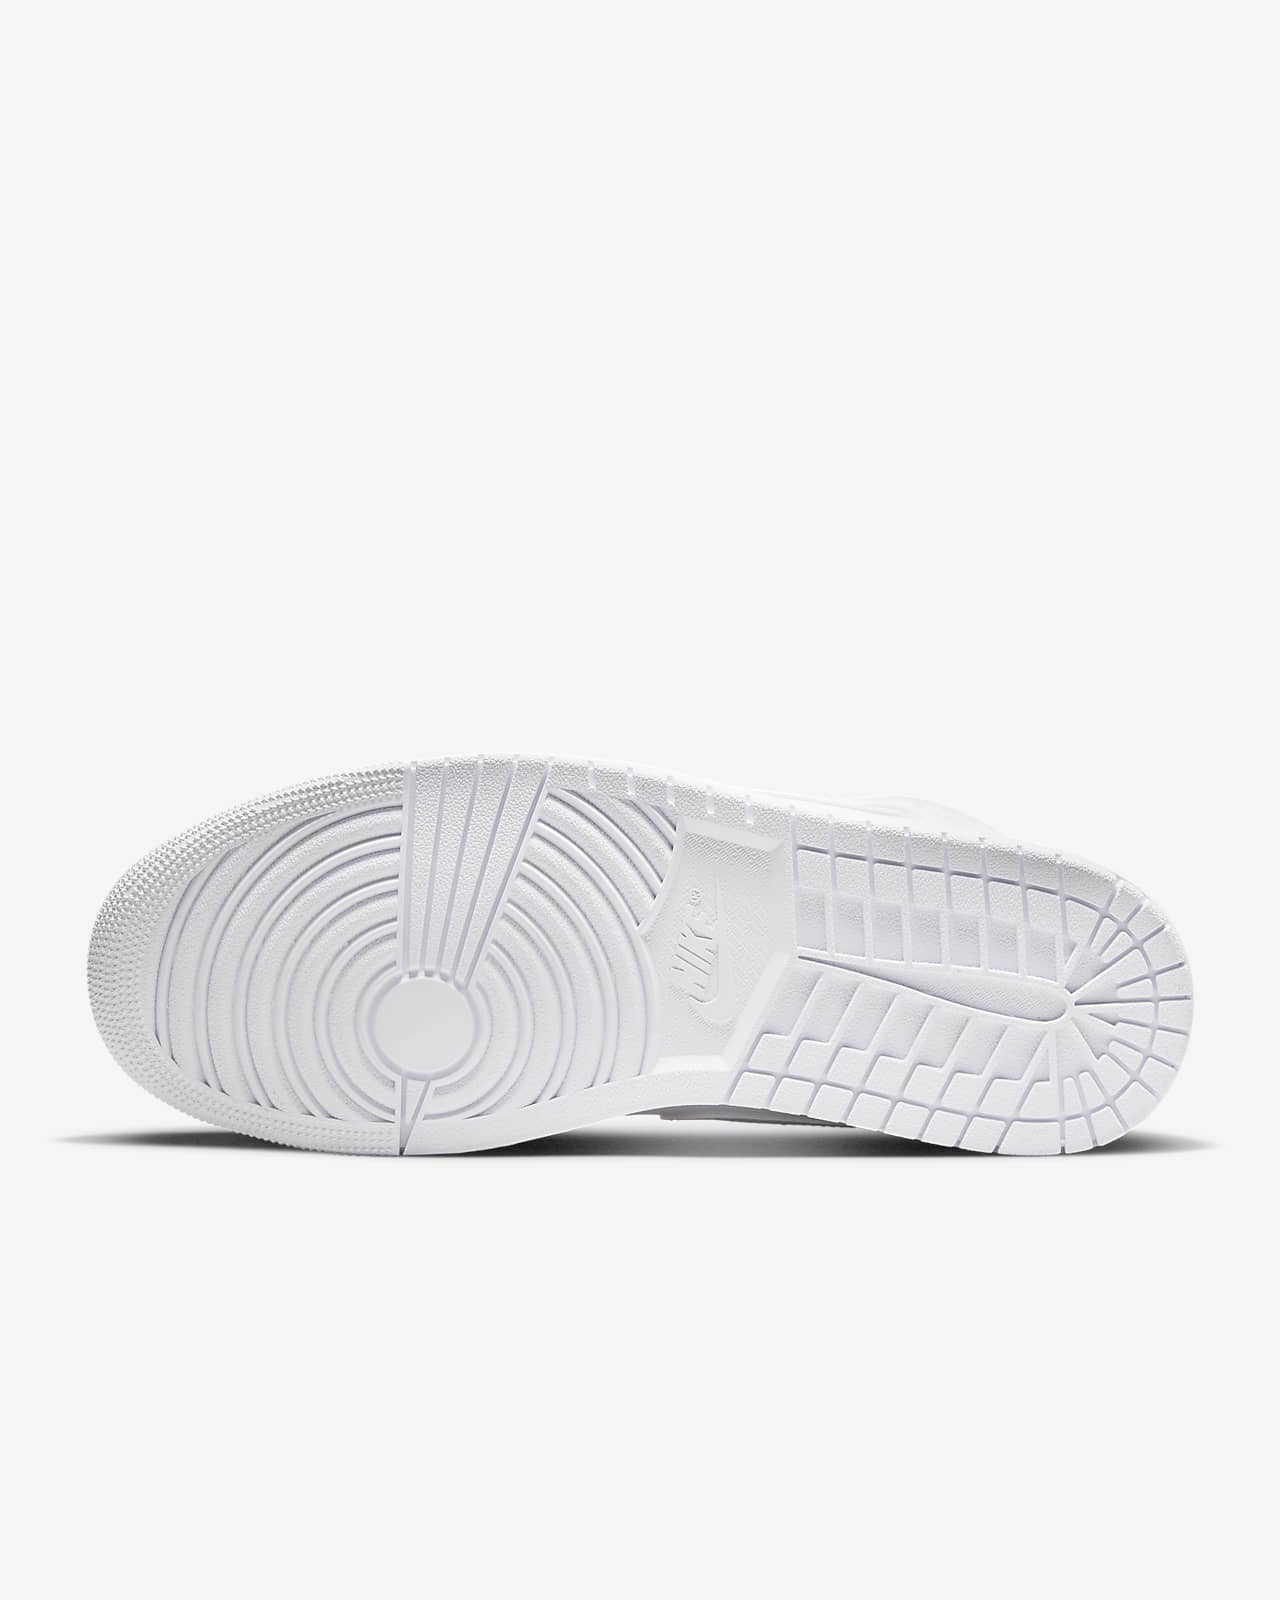 Air Jordan 1 Mid Shoes. Nike RO